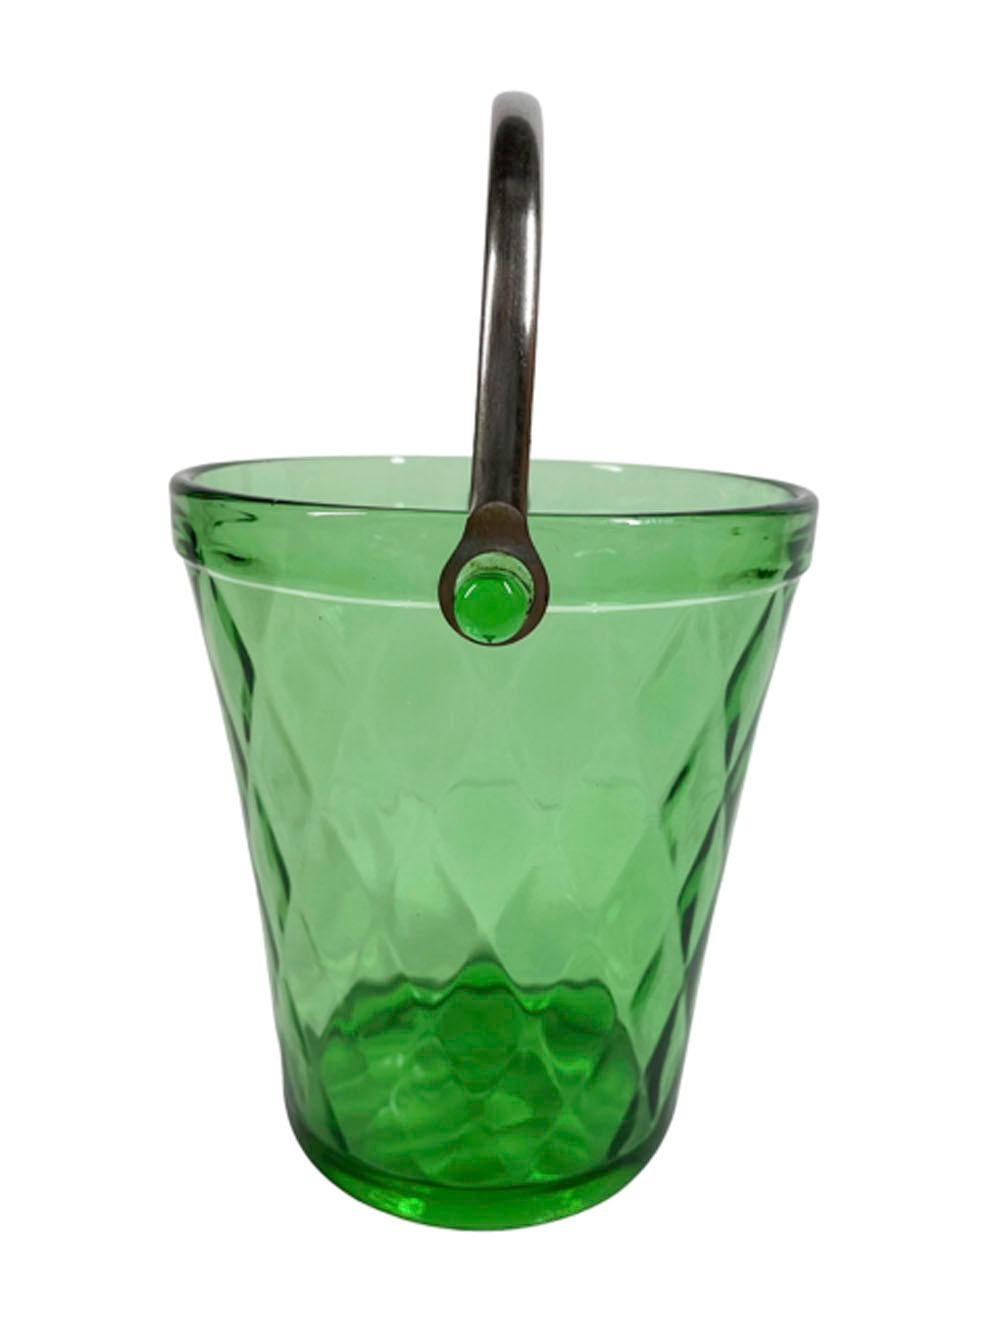 Seau à glace Art Déco en verre vert soufflé au moule à motif de diamant optique, le bord avec des oreilles moulées auxquelles se fixe l'anse pivotante en métal.